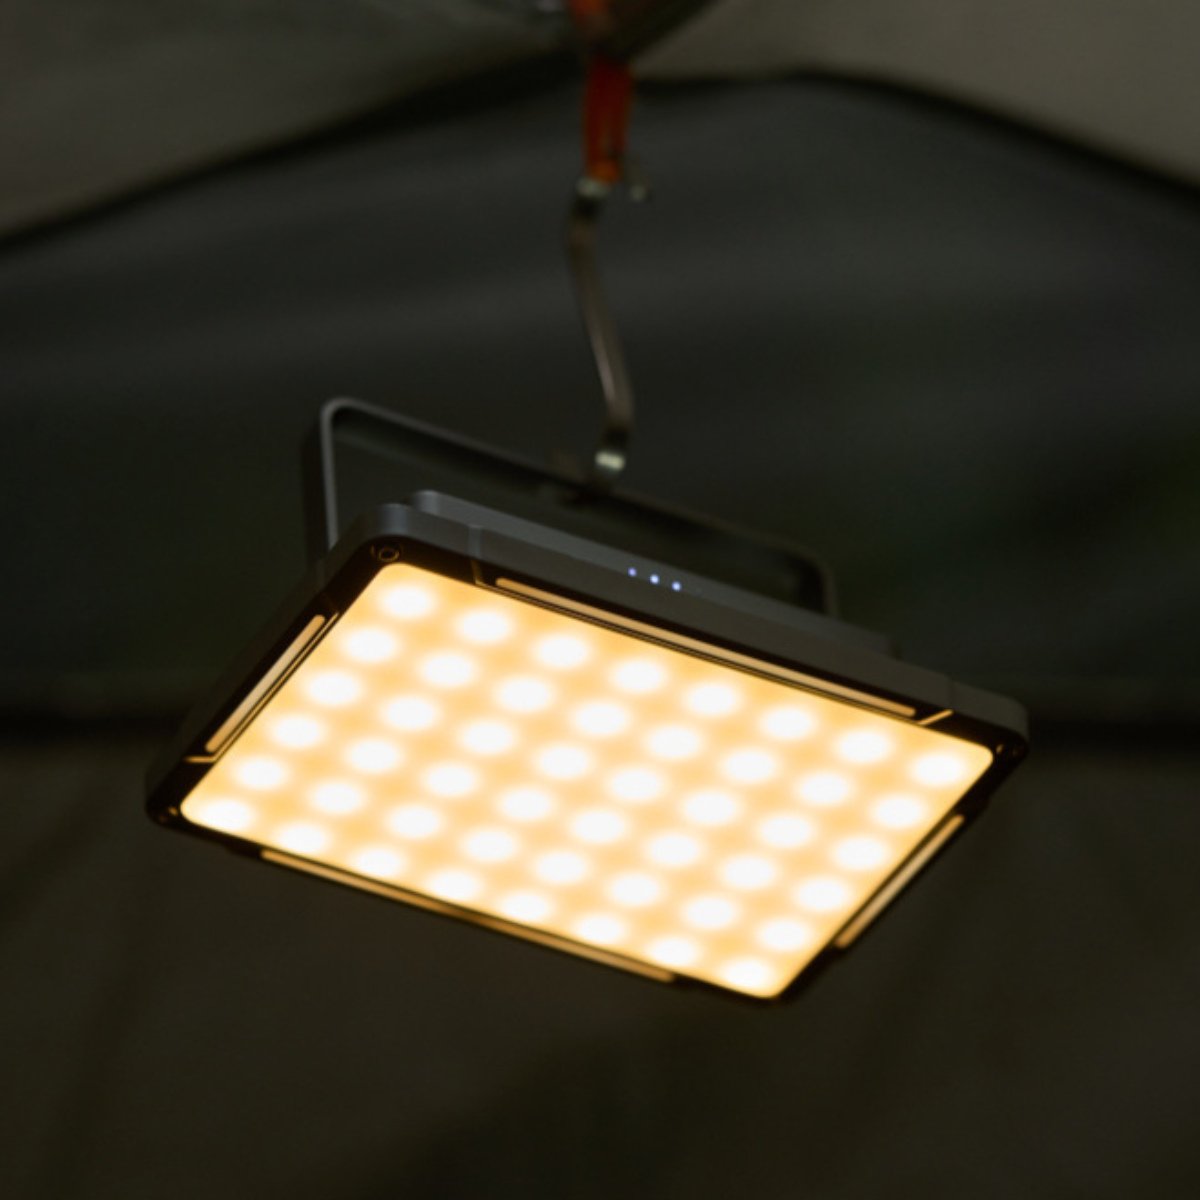 UWOT Metall-Campinglampe: Ausdauer zwei hohe einstellbares Leuchtrichtungen, Weiß,Gelb camping lampe tragbar&langlebig, Licht